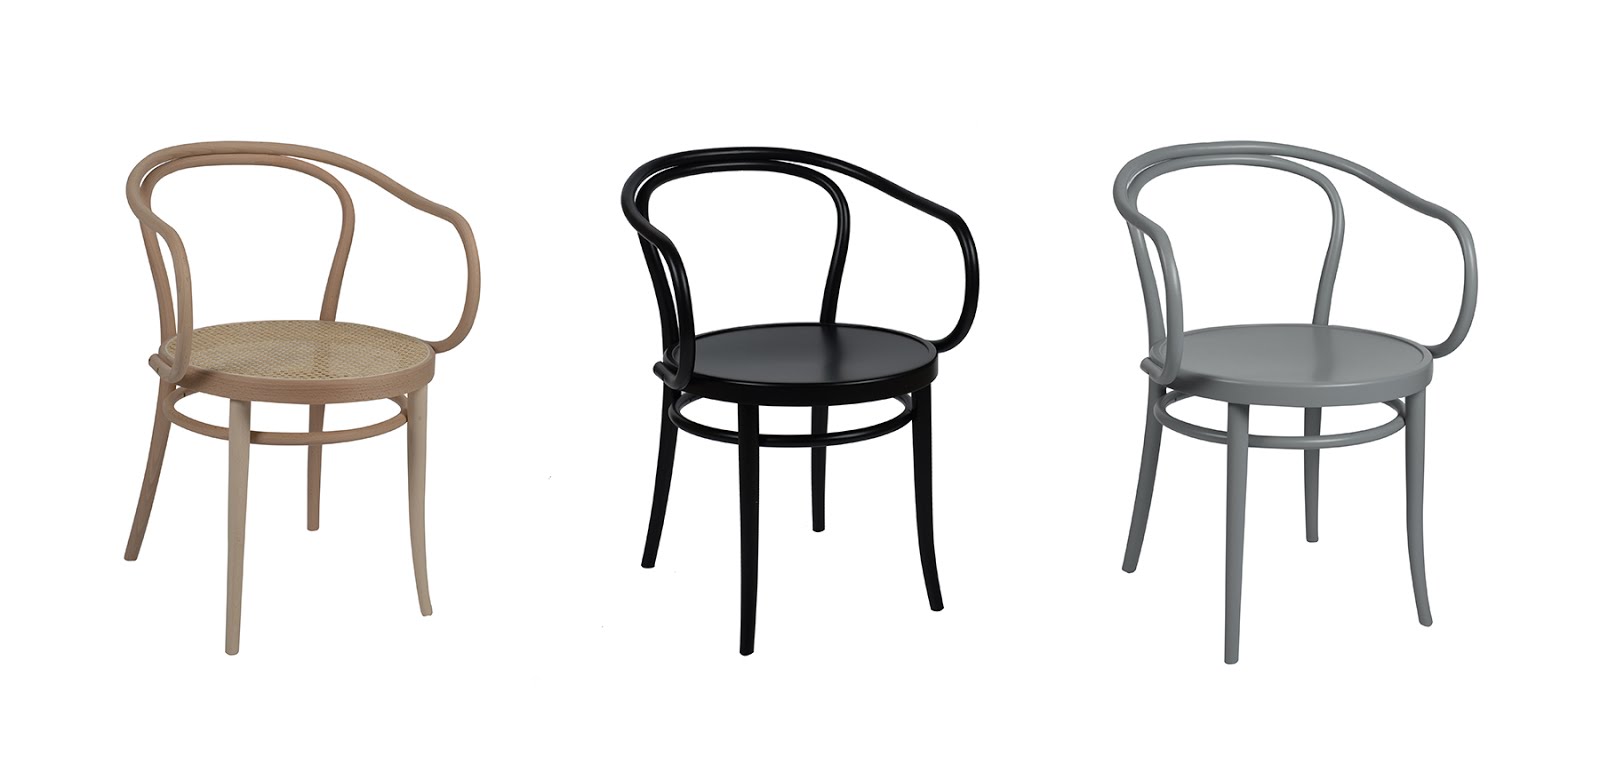 Dille & kamille, thonet, stoelen, chairs, gebogen, eenvoud, nieuw, betaalbaar, duurzaam